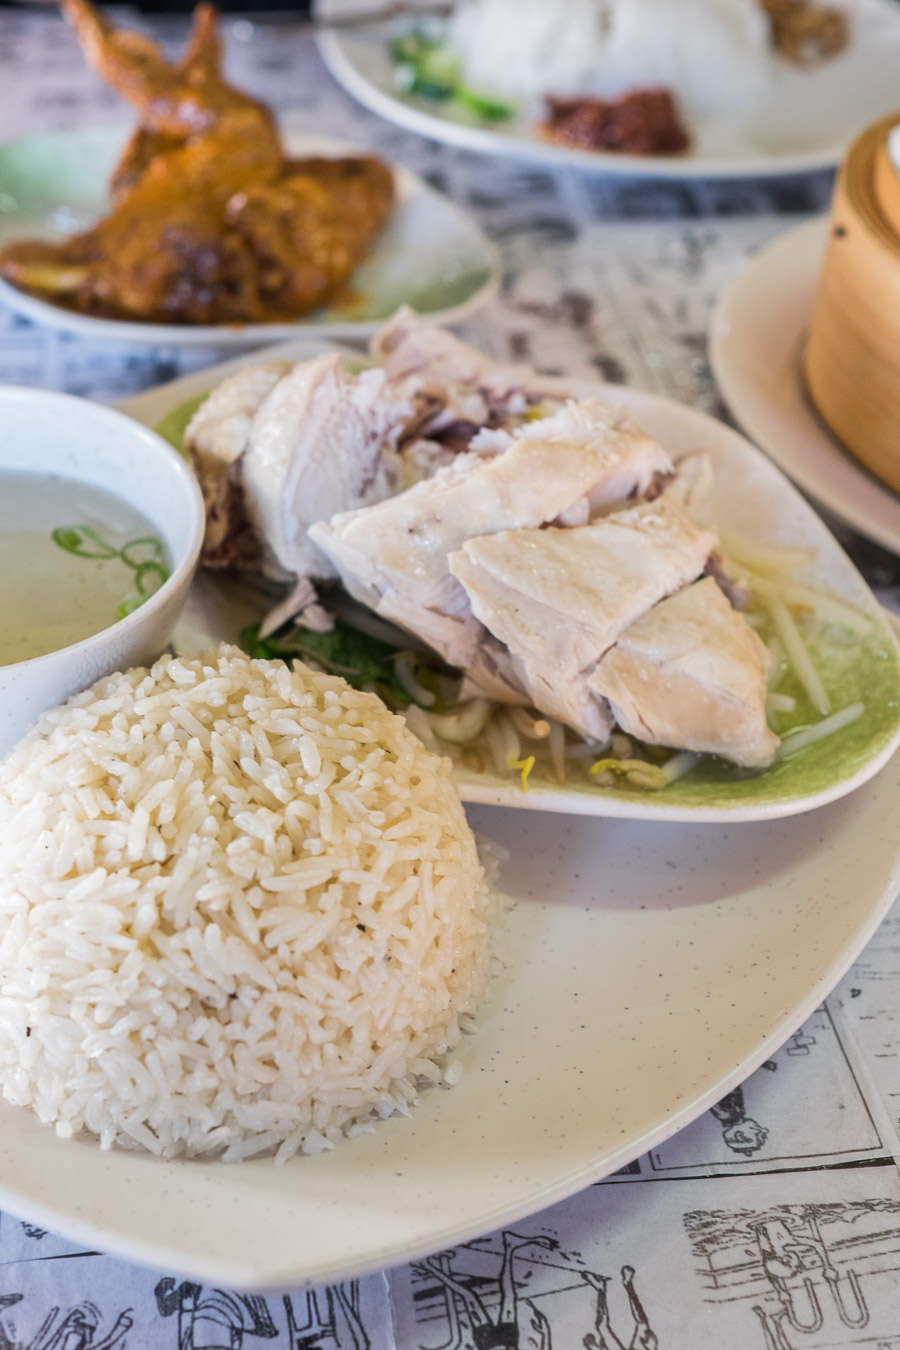 Hainanese chicken rice (AU$11.50)